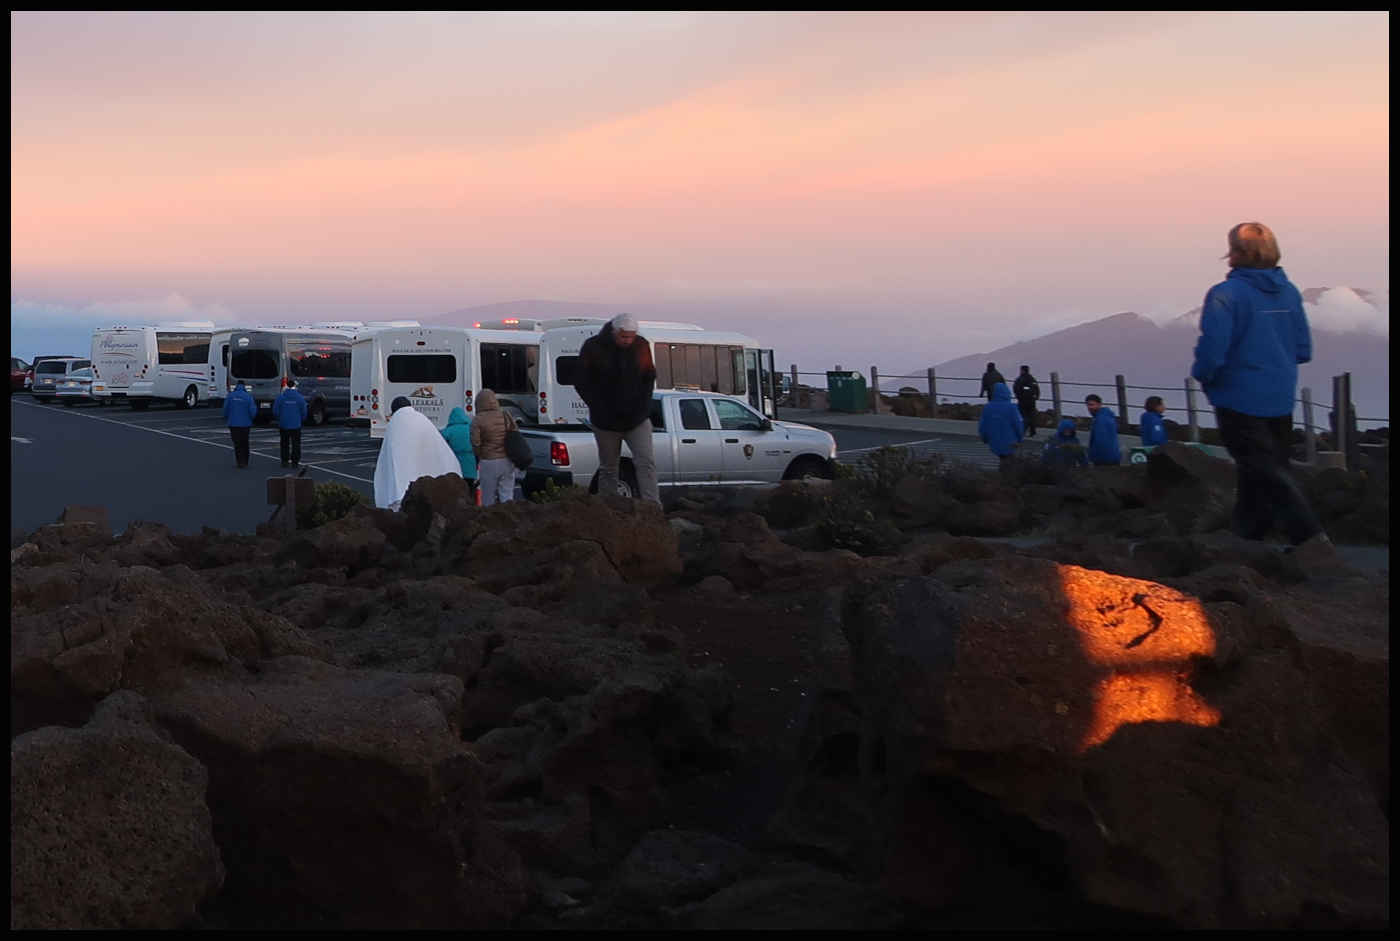 Amanecer fresco en el Haleakalā, lleva ropa de abrigo